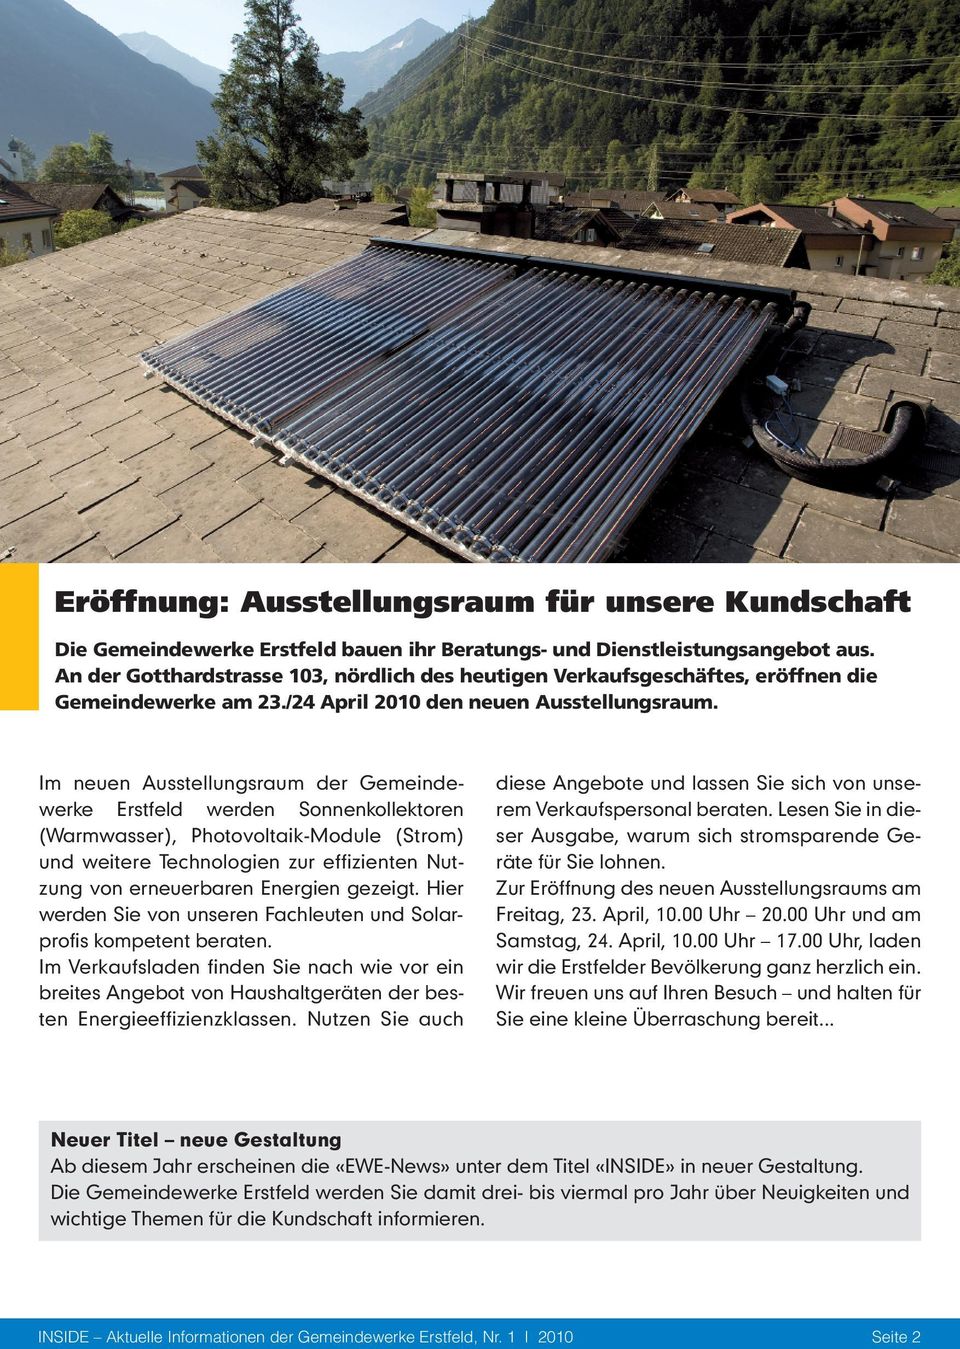 Im neuen Ausstellungsraum der Gemeindewerke Erstfeld werden Sonnenkollektoren (Warm wasser), Photovoltaik-Module (Strom) und weitere Technologien zur effizienten Nutzung von erneuerbaren Energien